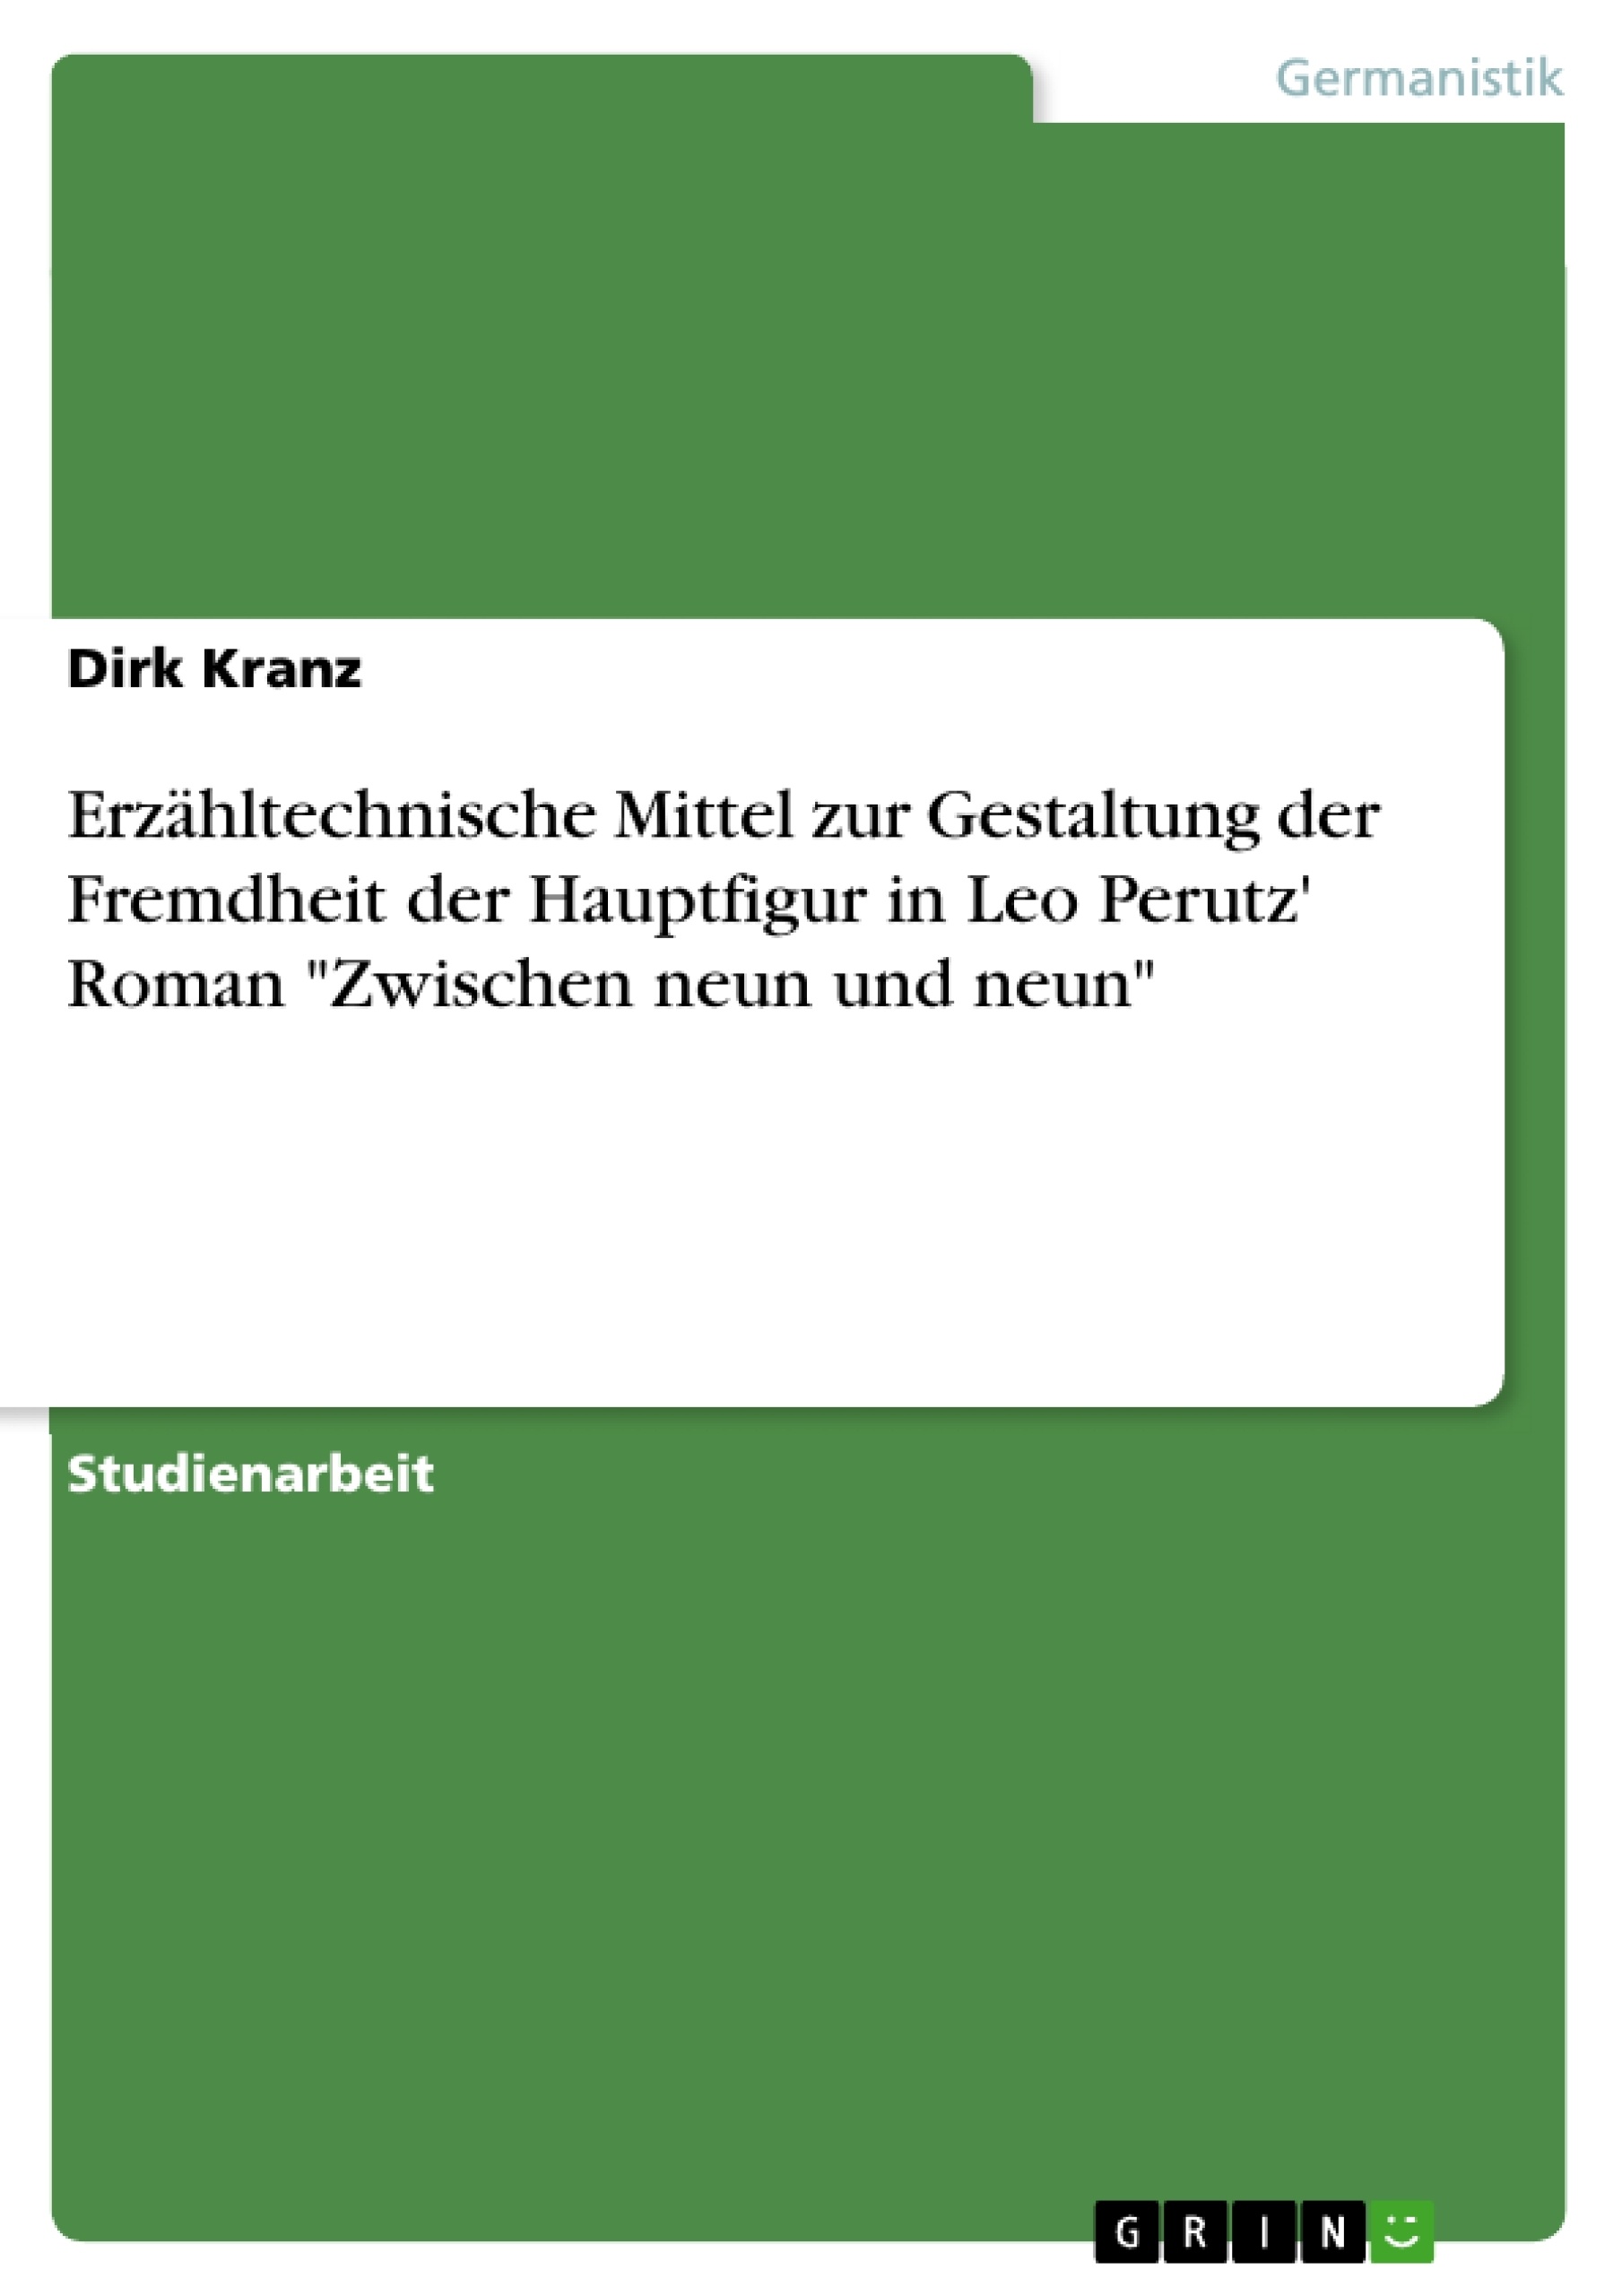 Title: Erzähltechnische Mittel zur Gestaltung der Fremdheit der Hauptfigur in Leo Perutz' Roman "Zwischen neun und neun"